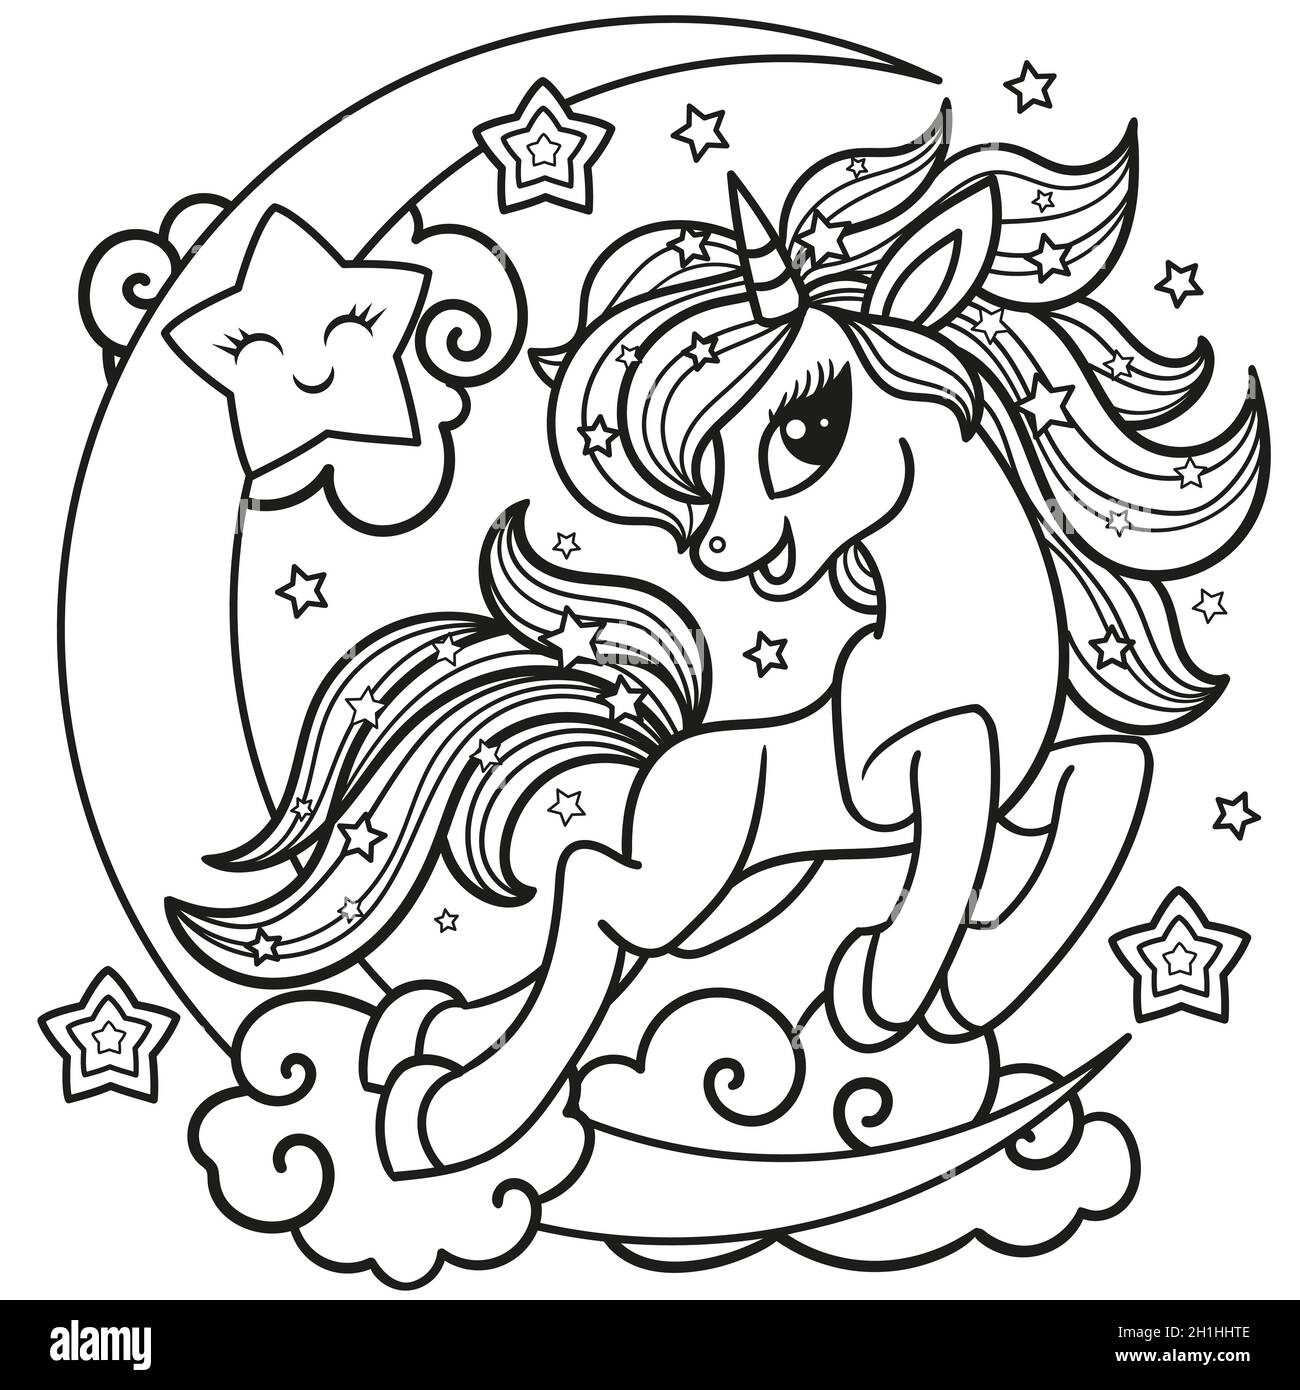 Caricature, adorable licorne.Image linéaire noir et blanc.Vecteur. Illustration de Vecteur